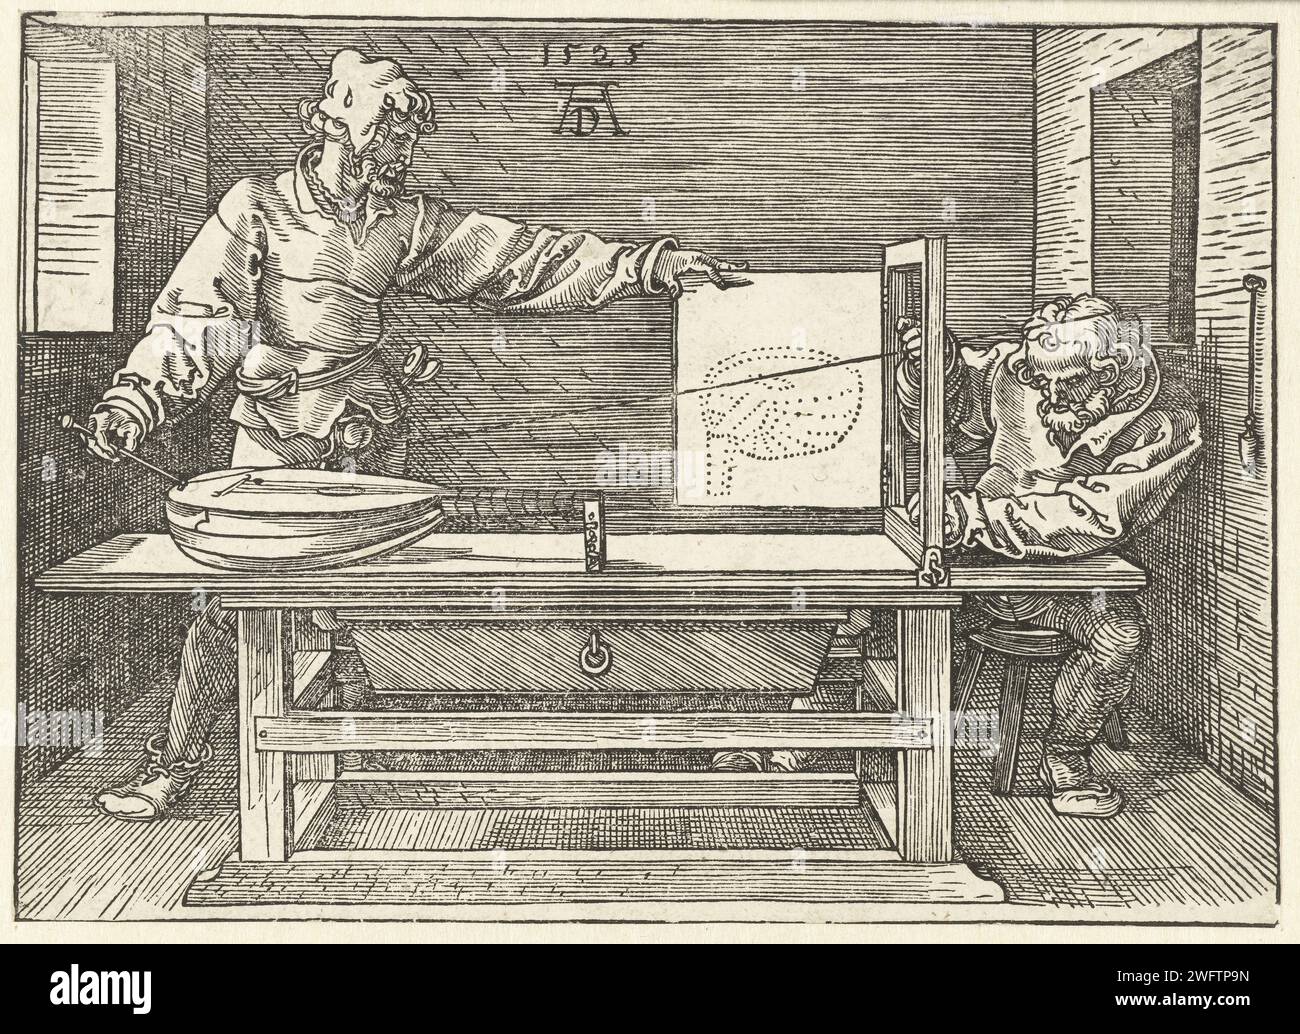 Zeichner zeichnet eine Laute, Albrecht Dürer, 1525 drucken Ein Zeichner und sein Helfer zeichnen eine Laute nach einer von Dürer erdachten, genialen, aber sehr umständlichen Methode, ein Objekt in kurzer Perspektive darzustellen. Nürnberger Papierinstrumente zum perspektivischen Zeichnen. Zeichner bei der Arbeit. Laute und spezielle Lautenformen, z. B. Theorbo Stockfoto